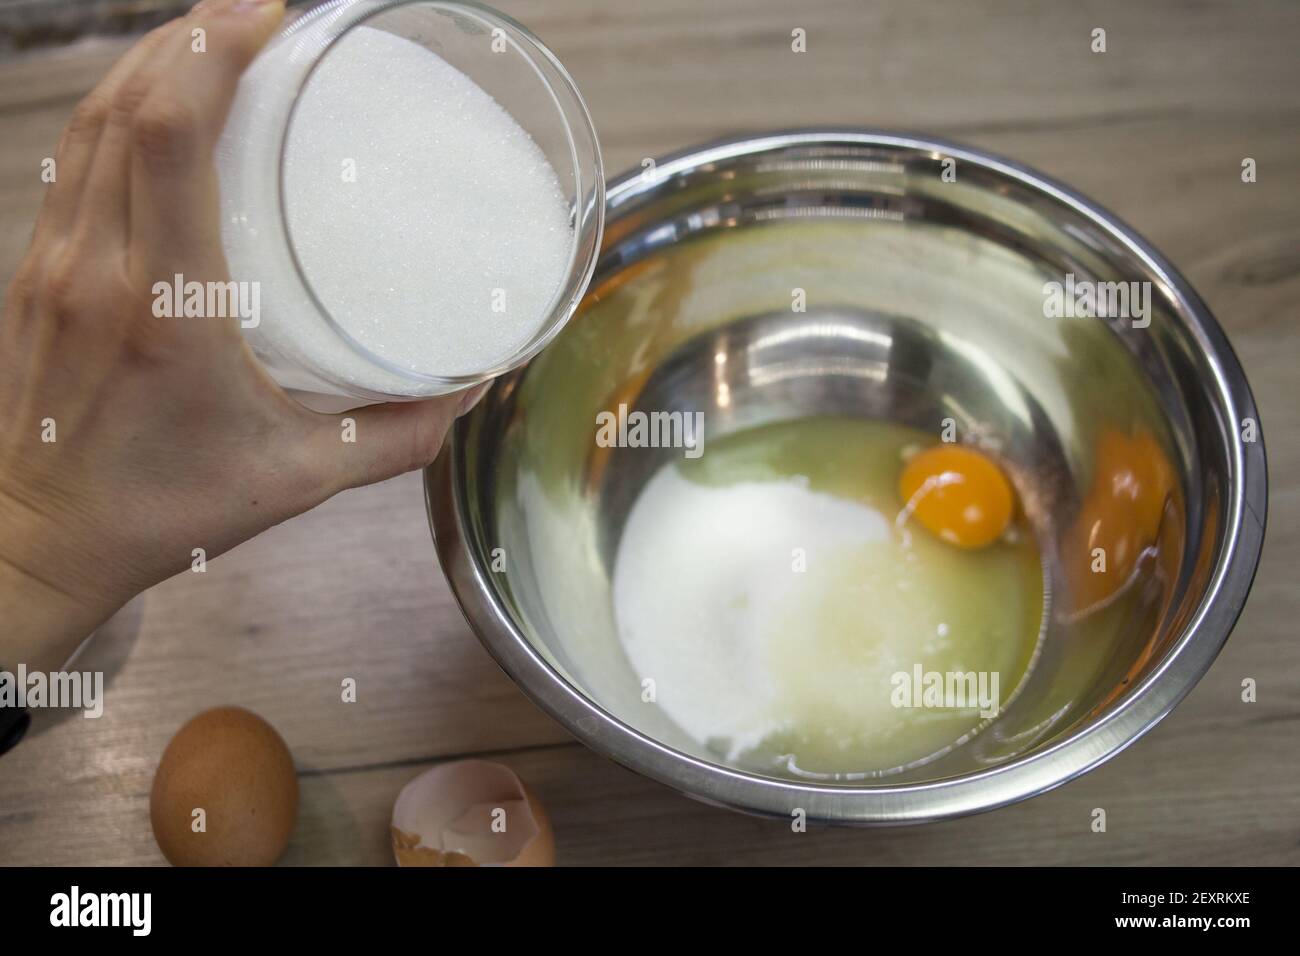 La mano aggiunge zucchero al recipiente metallico con uova e zucchero. Il secondo passaggio per preparare muffin, torta, biscotto. Cottura graduale. Aggiunta di zucchero, ad esempio Foto Stock